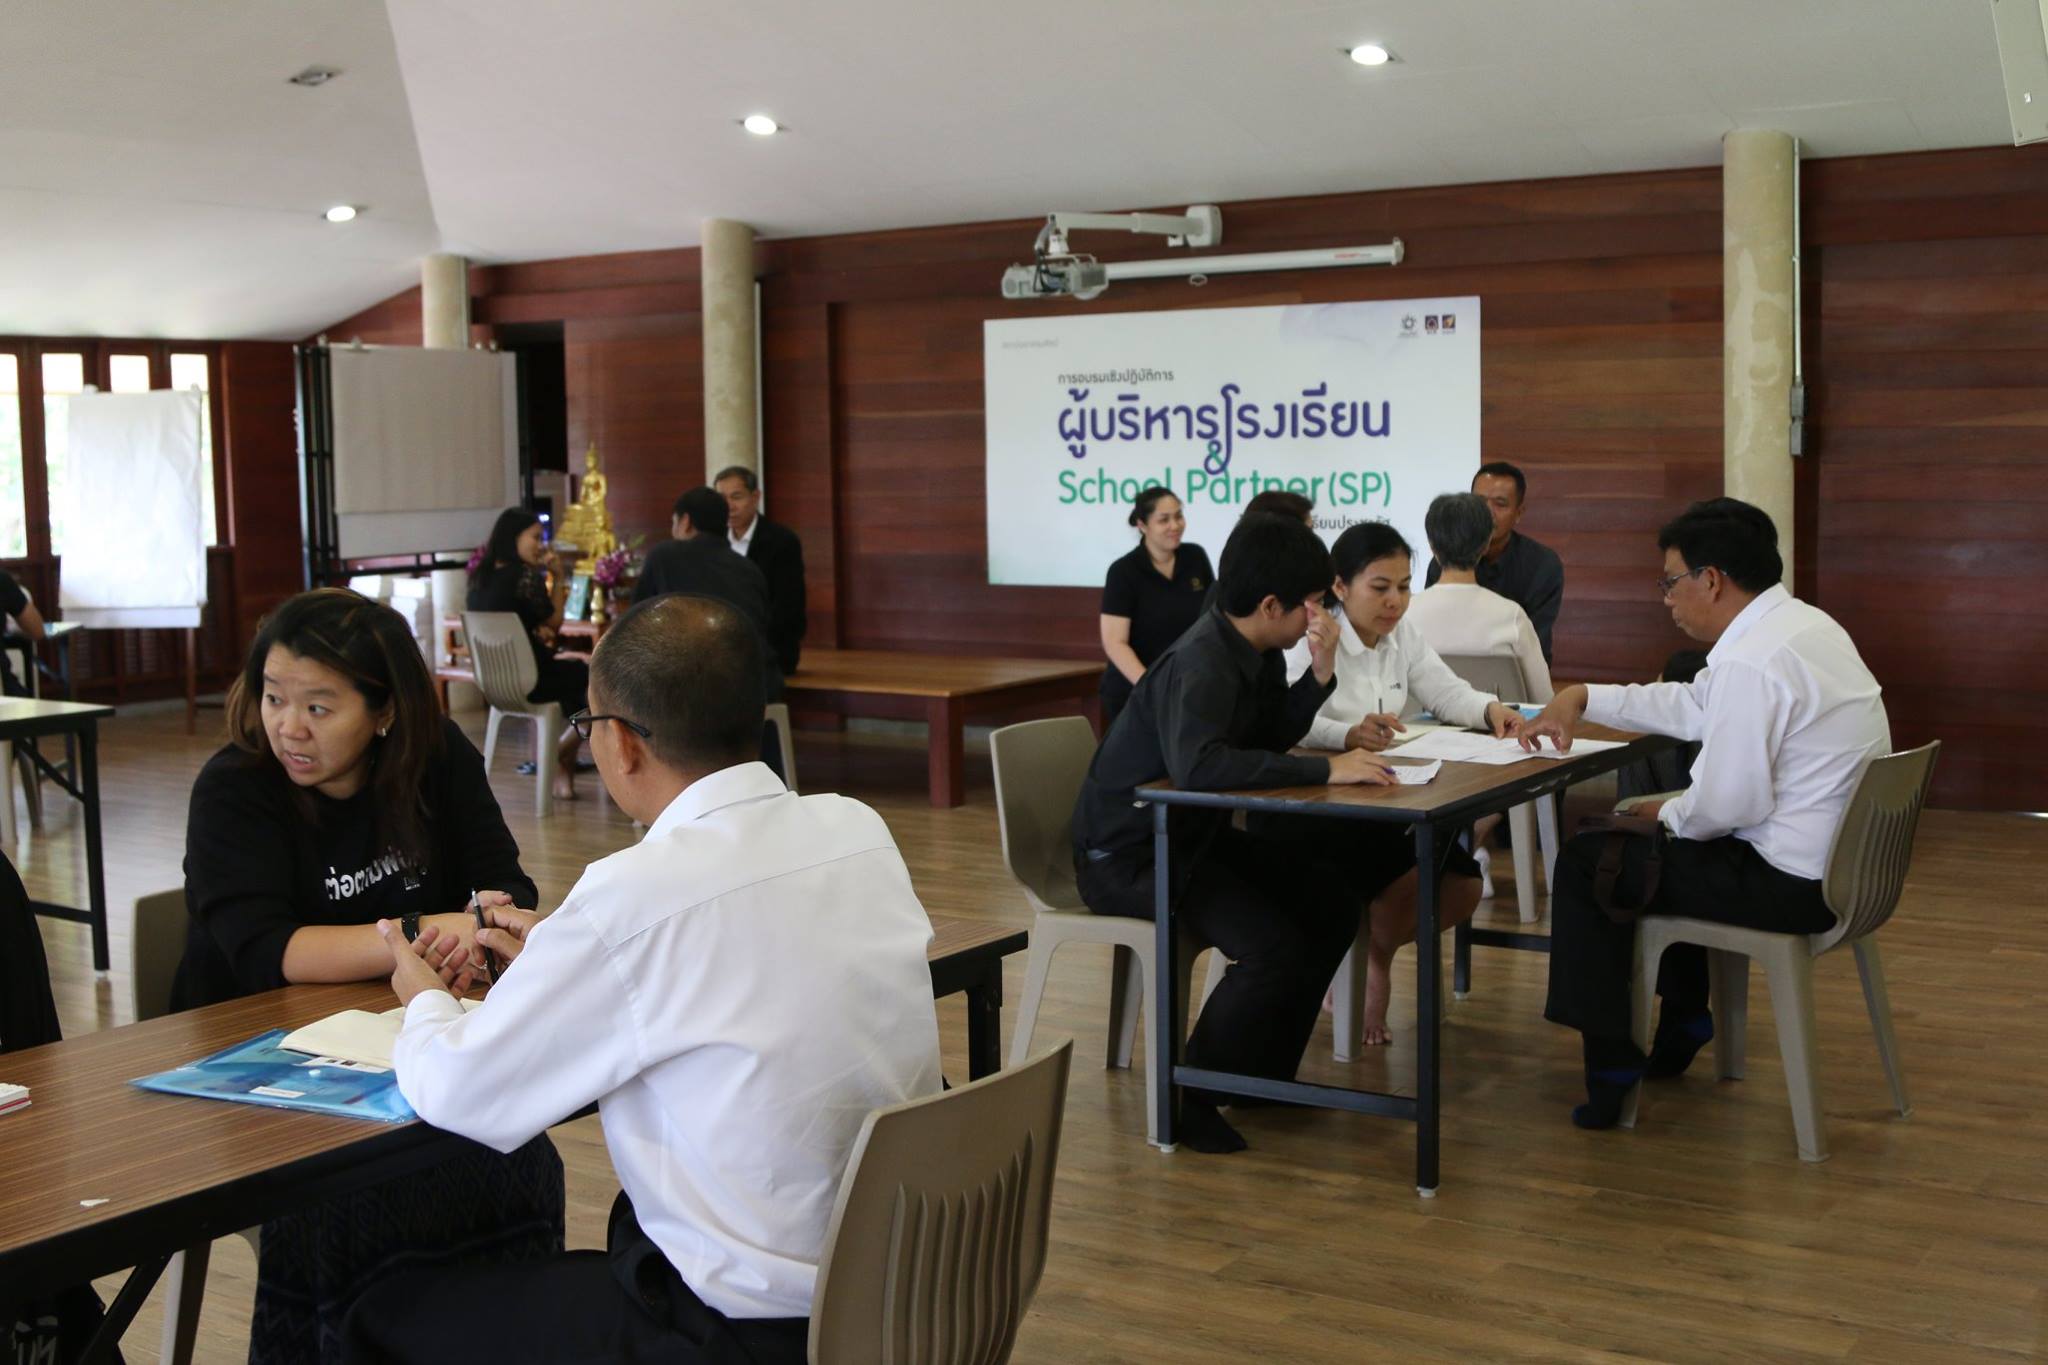 จุดประกายฝันพัฒนาโรงเรียนประชารัฐ 4 ภูมิภาค thaihealth